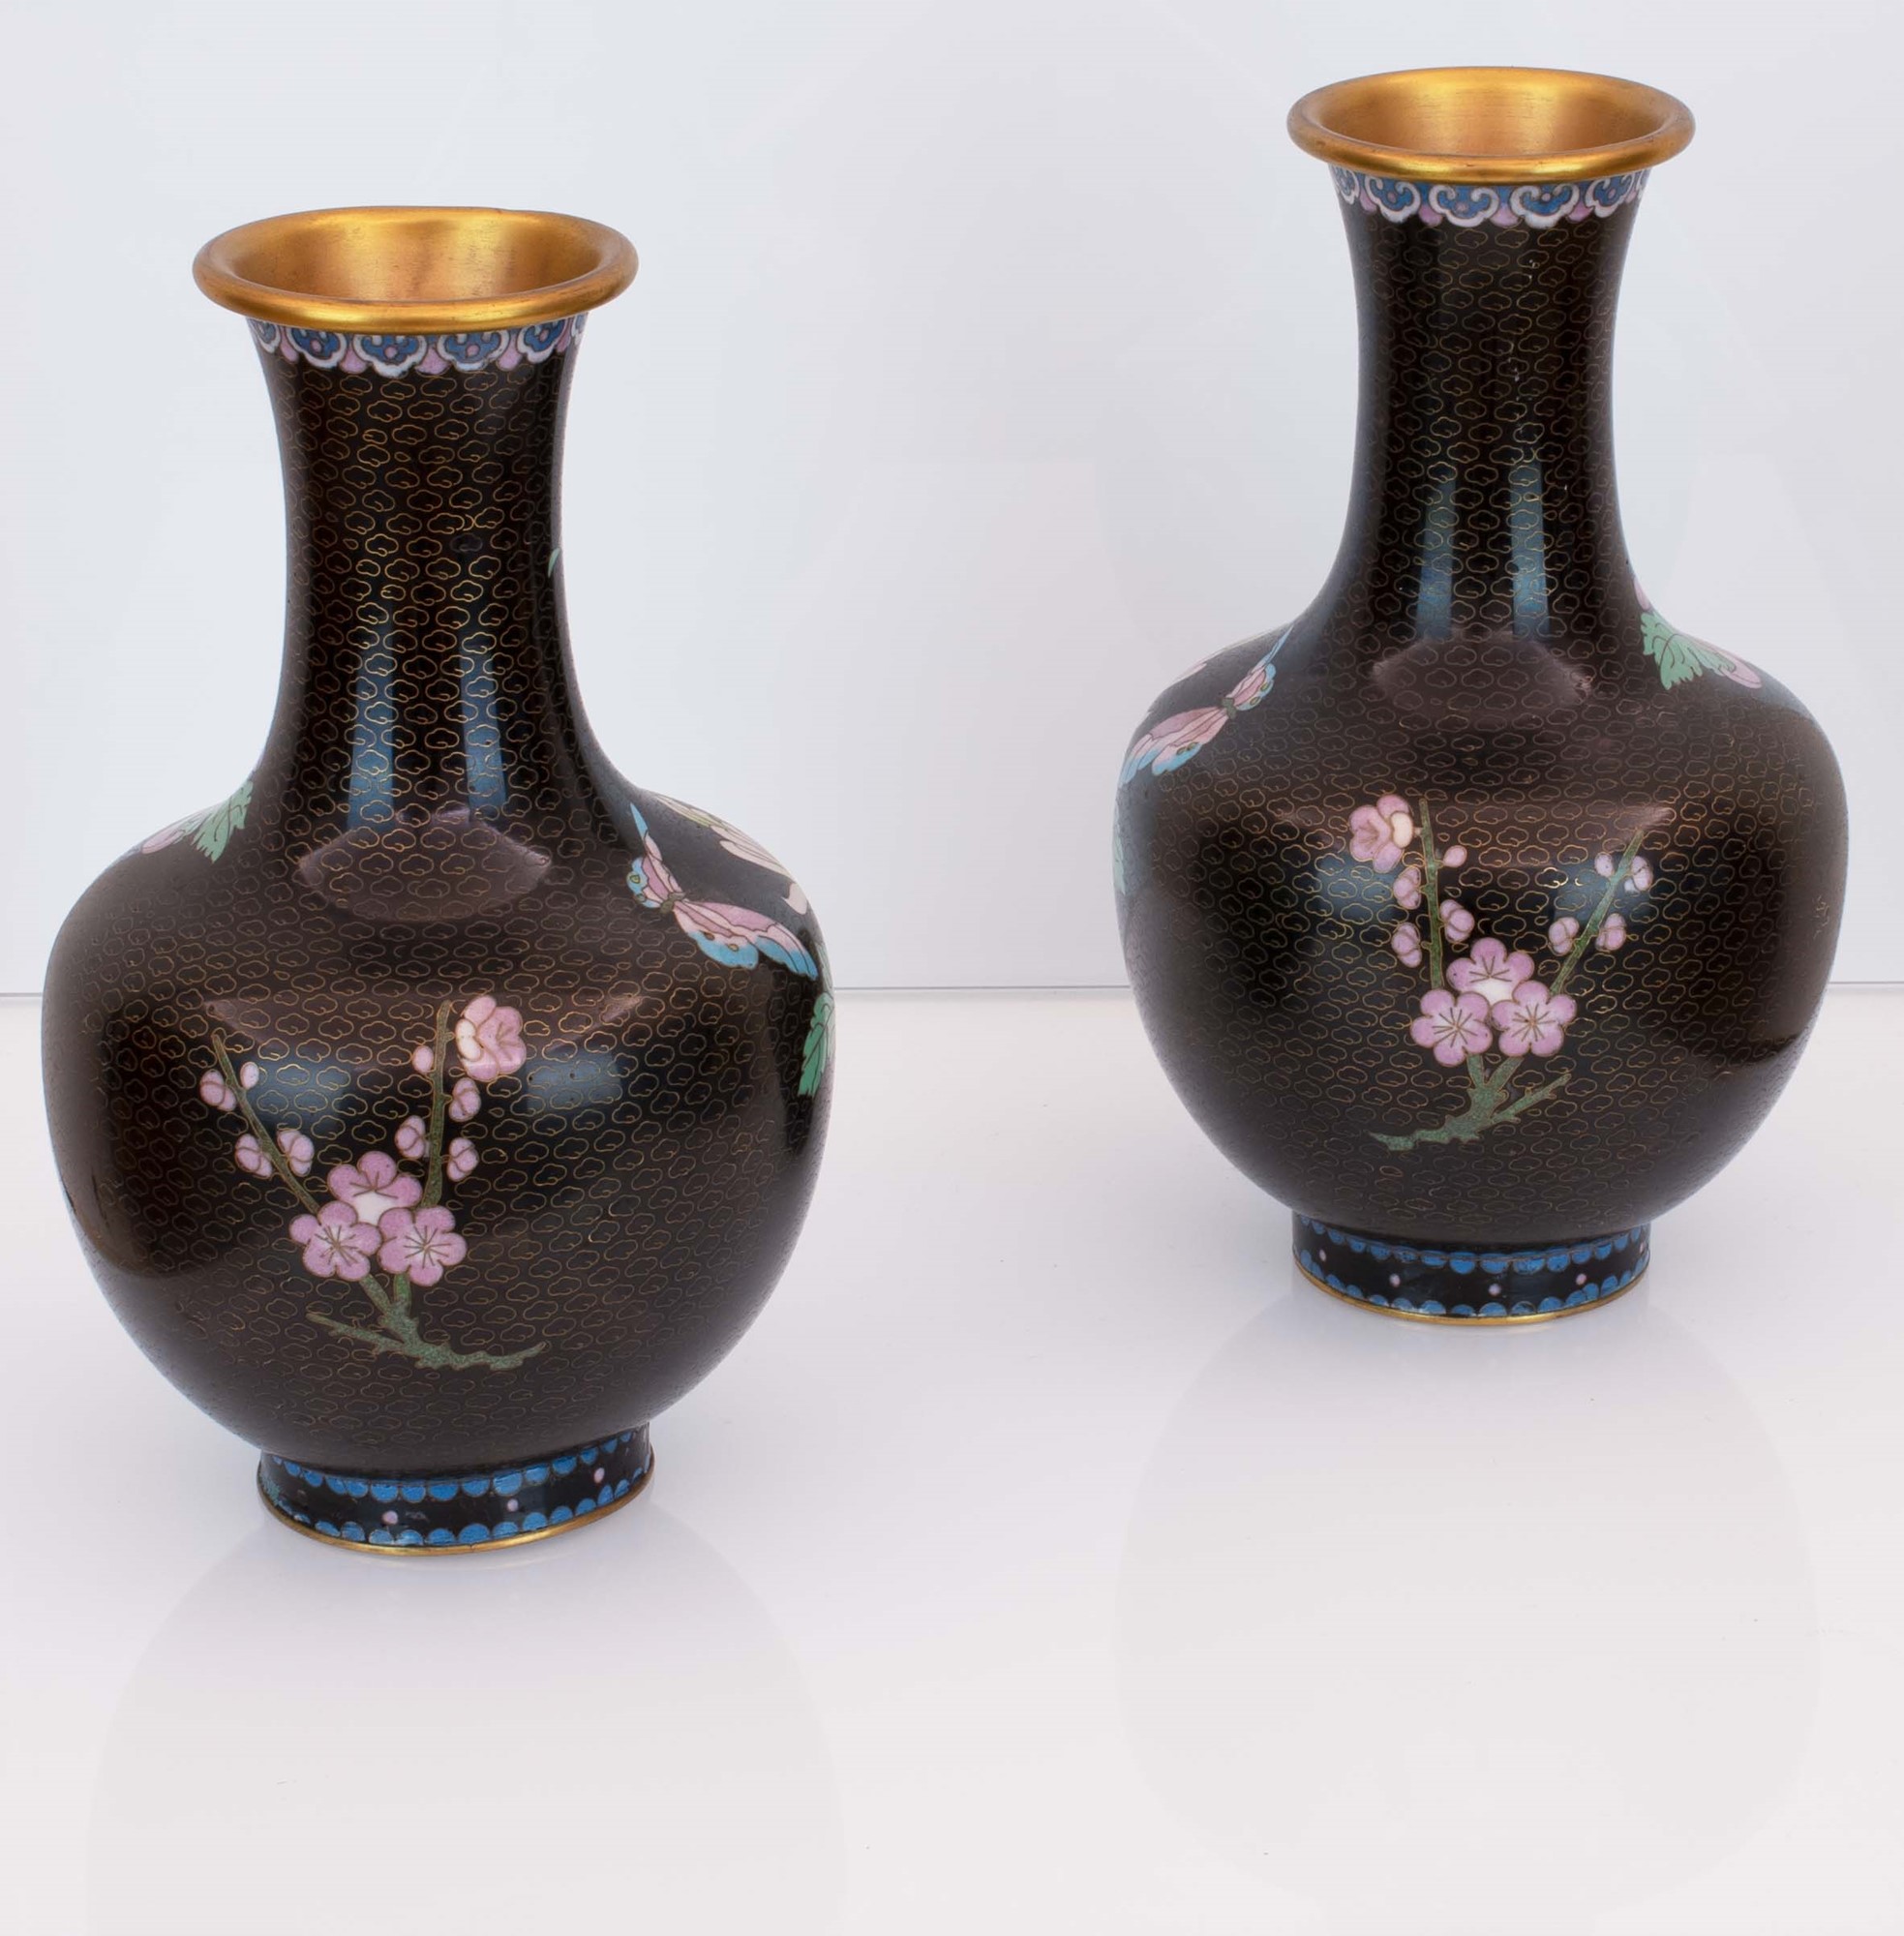 Coppia di vasi cloisonnet neri con decori floreali. Basi in legno ebanizzato. - Image 3 of 4